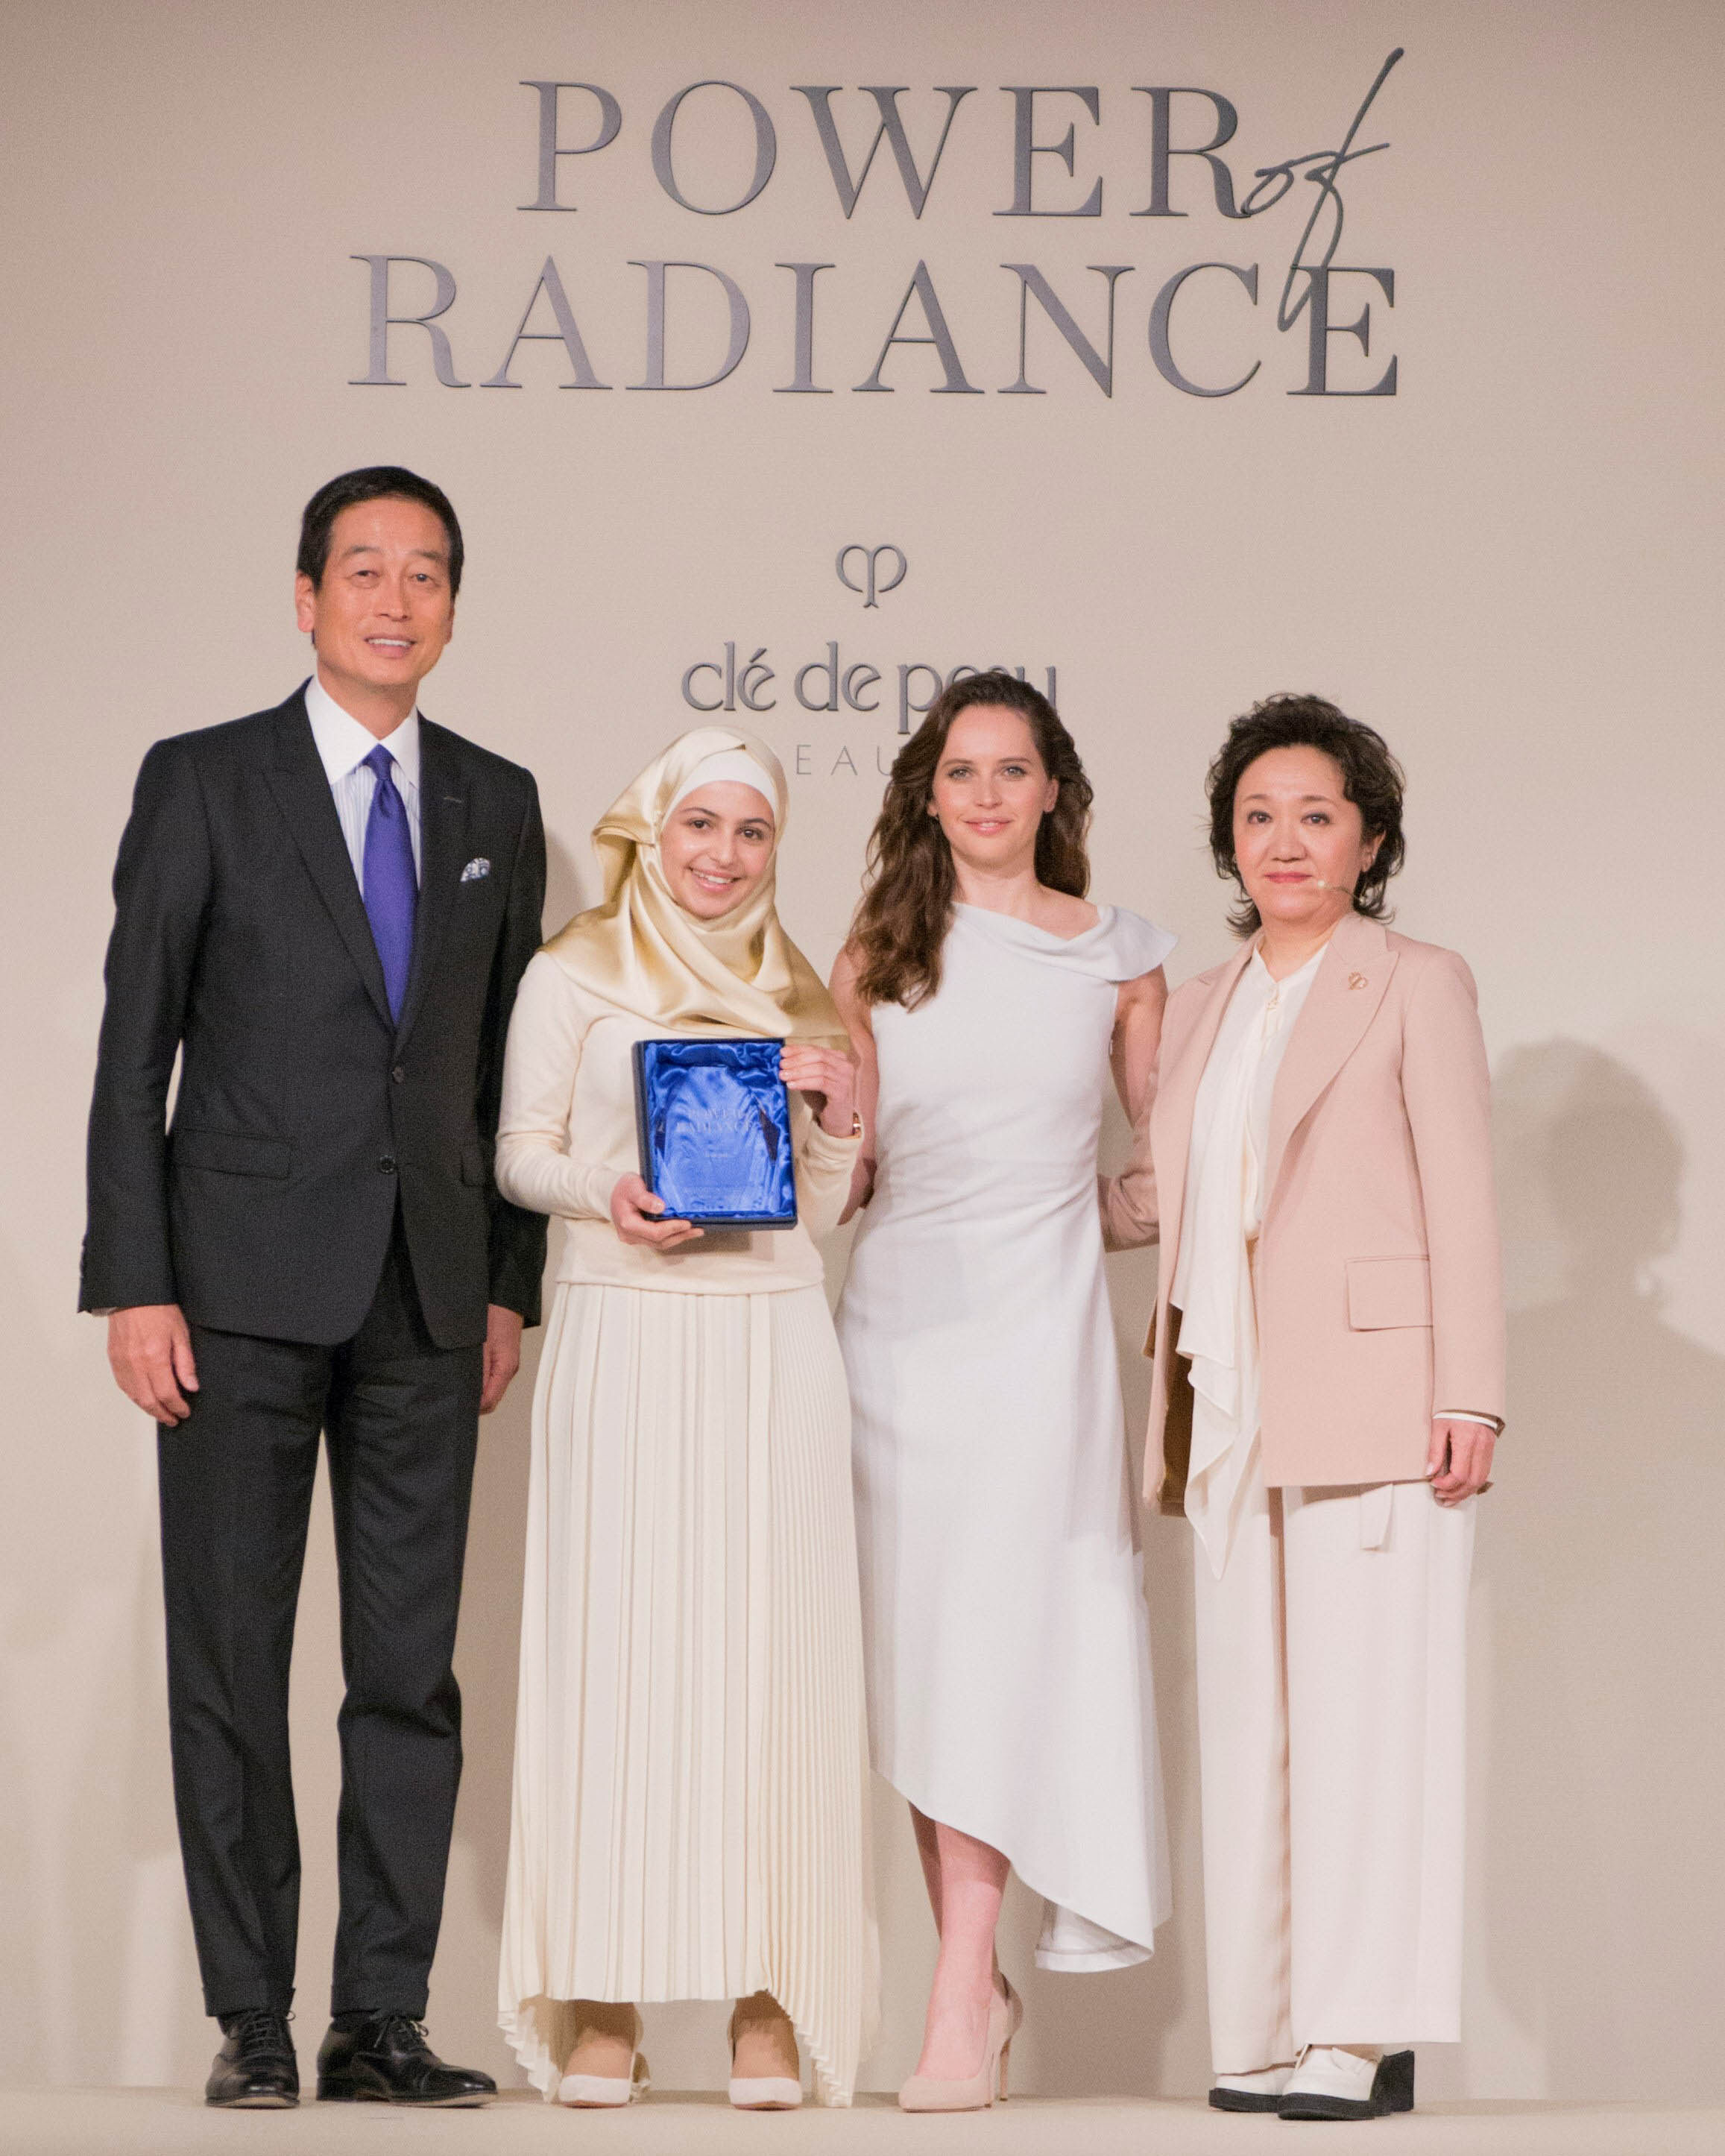 Clé de Peau Beauté選她為首屆"The Power of Radiance"慈善企劃的得獎者。